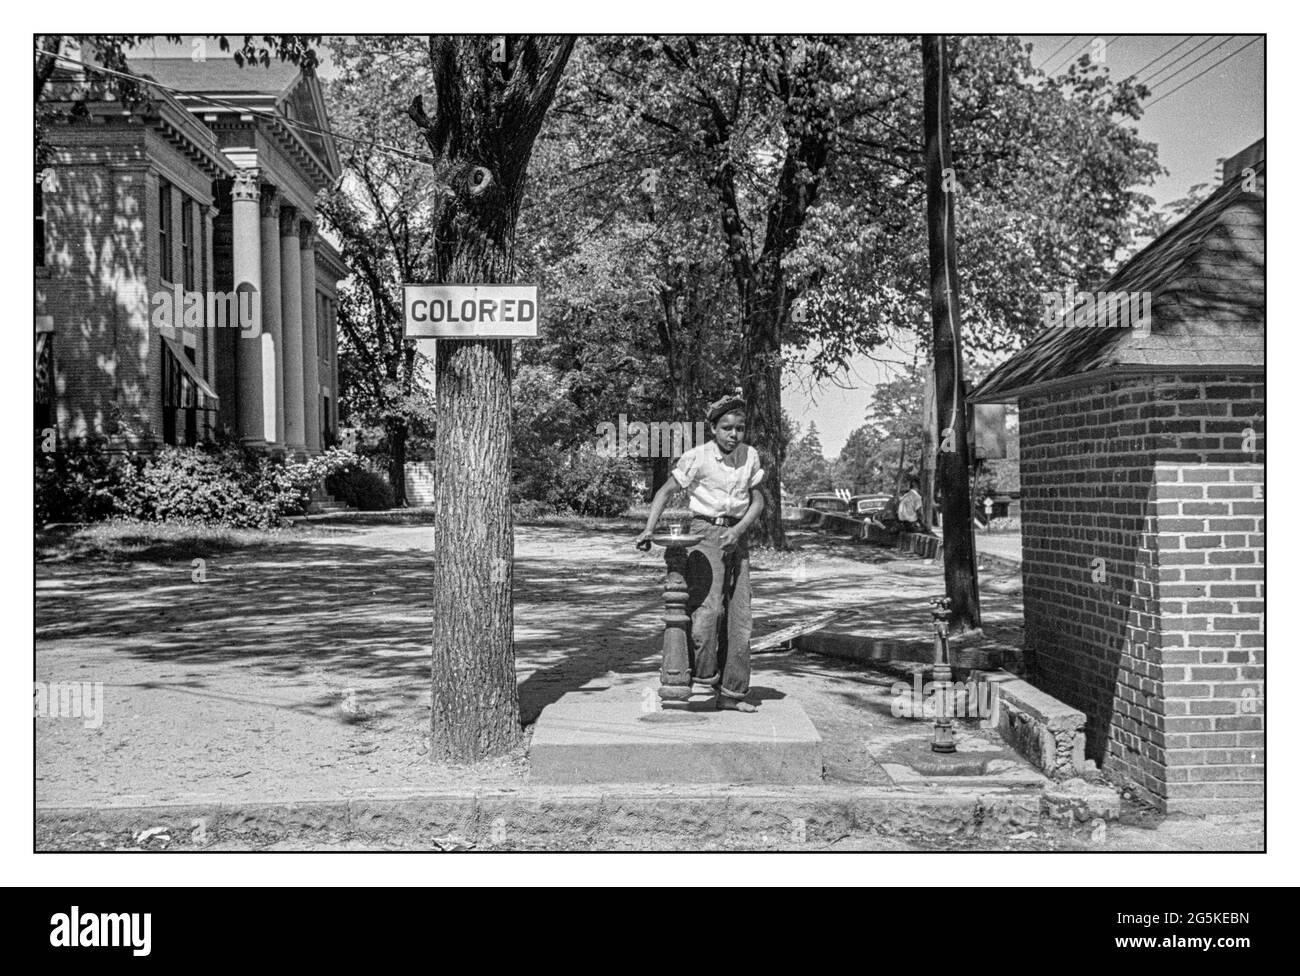 DISKRIMINIERUNG AUFGRUND DER RASSENTRENNUNG USA mit einem „farbigen“ Schild über dem Trinkbrunnen auf dem Rasen des Bezirksgerichts, wobei junge Afroamerikaner am Brunnen stehen. Halifax, North Carolina USA John Vachon Fotograf 1938 . Stockfoto